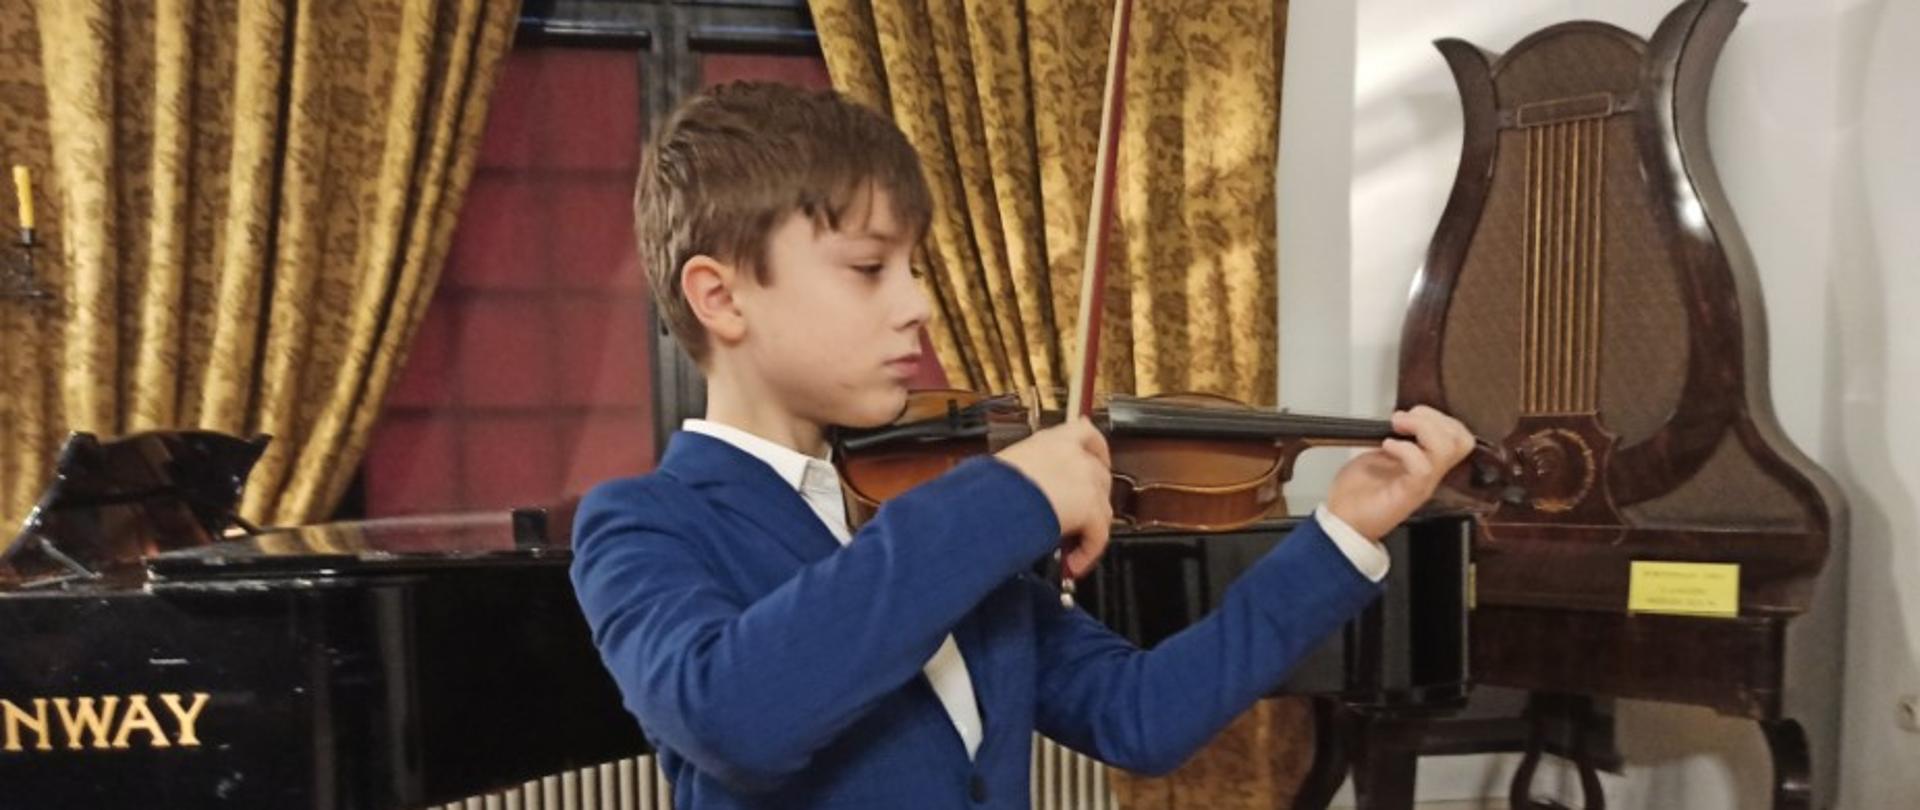 Zdjęcie kolorowe. Chłopiec w niebieskim garniturze gra na skrzypcach. Za nim stoi fortepian, z prawej strony stoi zabytkowy fortepian - lira.